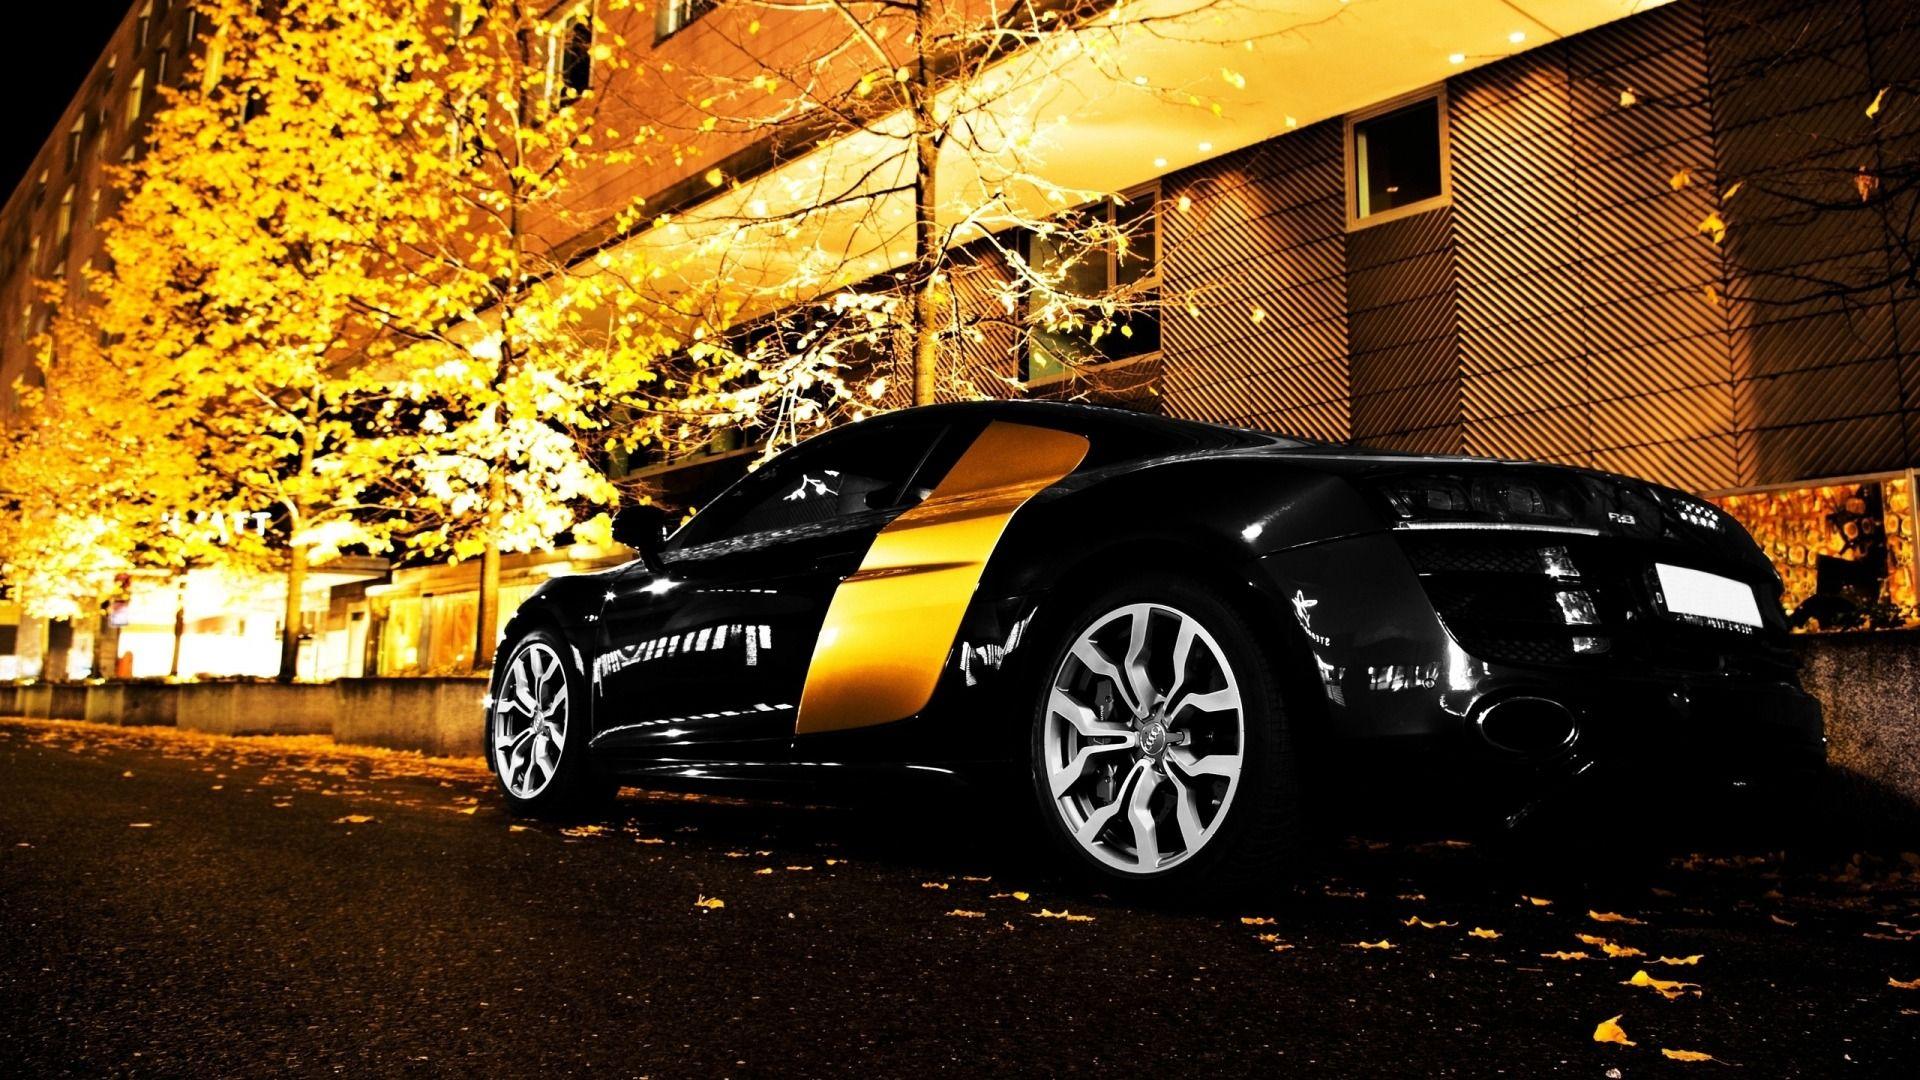 Best Car HD Wallpaper 1080p Widescreen High Resolution Wallpaper Of